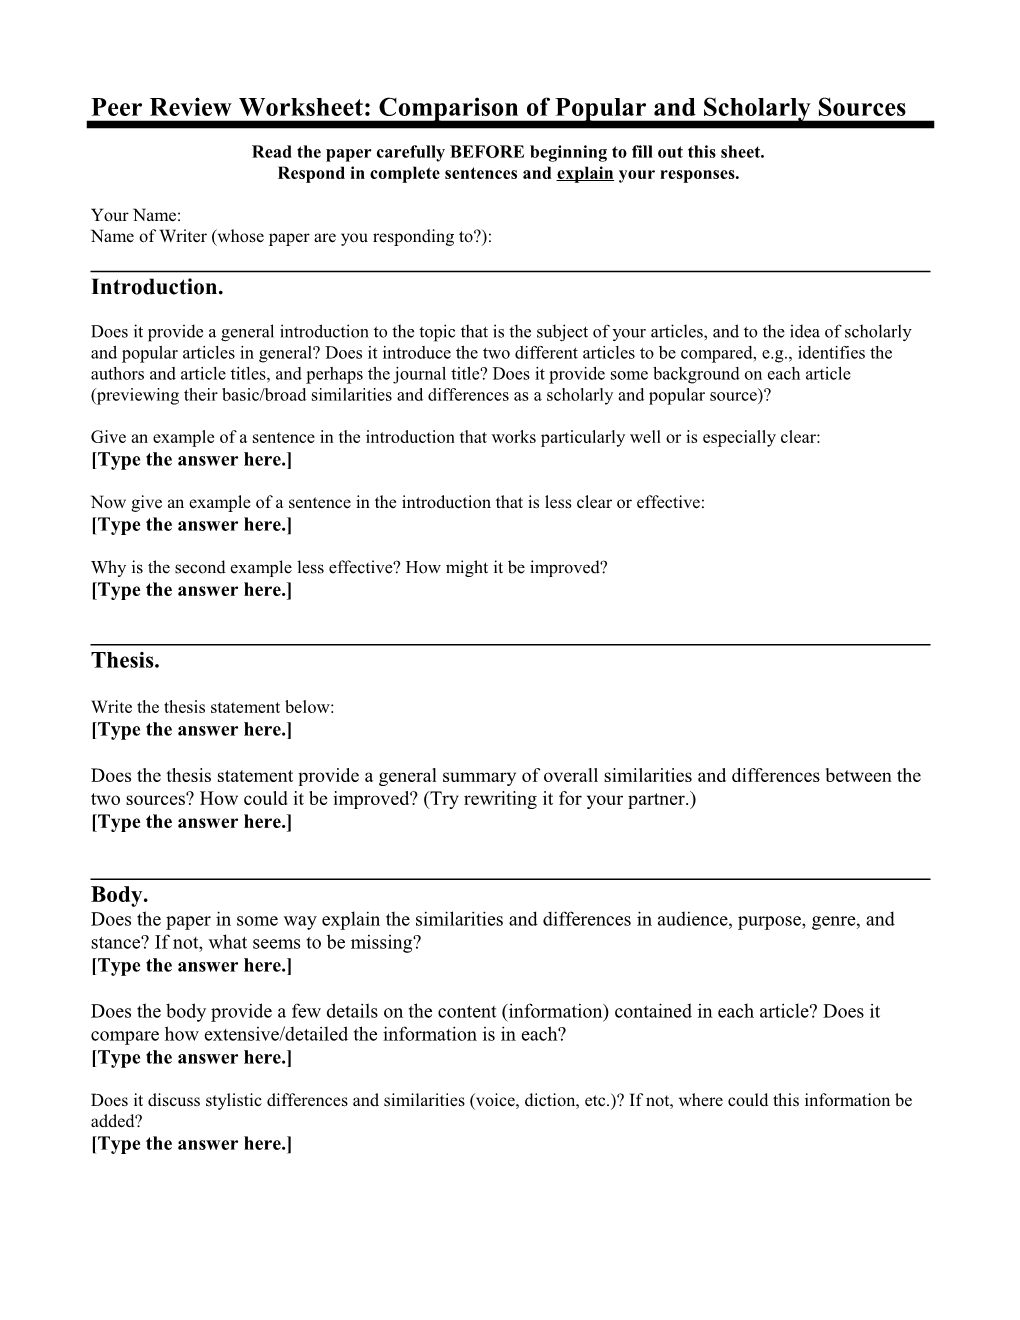 Topic Proposal Response Worksheet